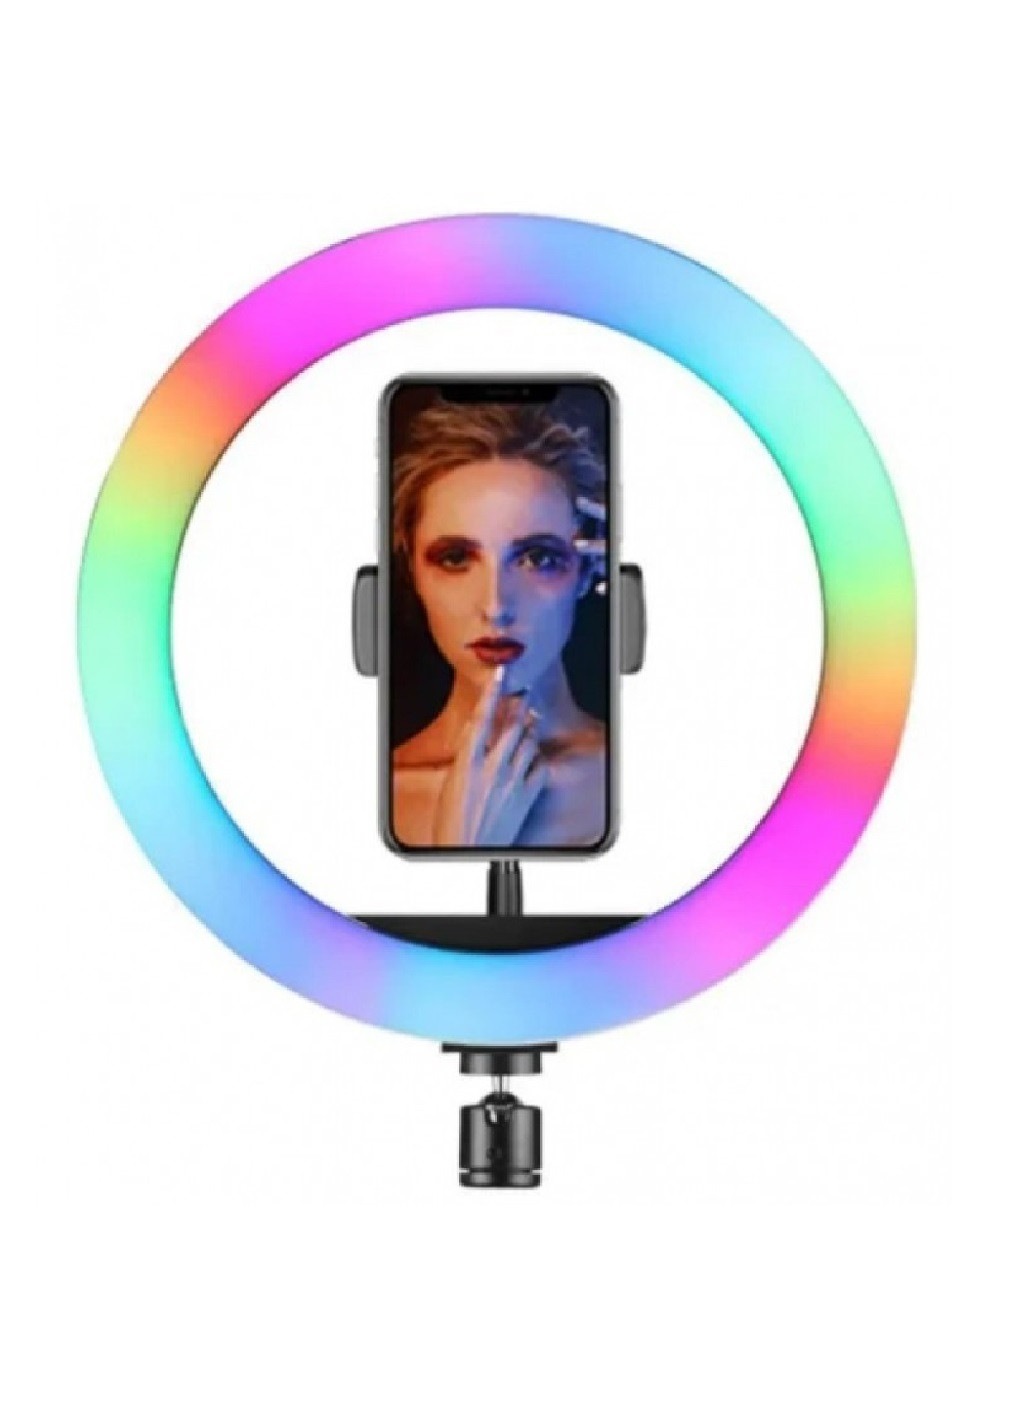 Кольцевая Led лампа для блогера селфи фотографа визажиста с держателем для телефона 26 см 25 W (473712-Prob) Unbranded (256186061)